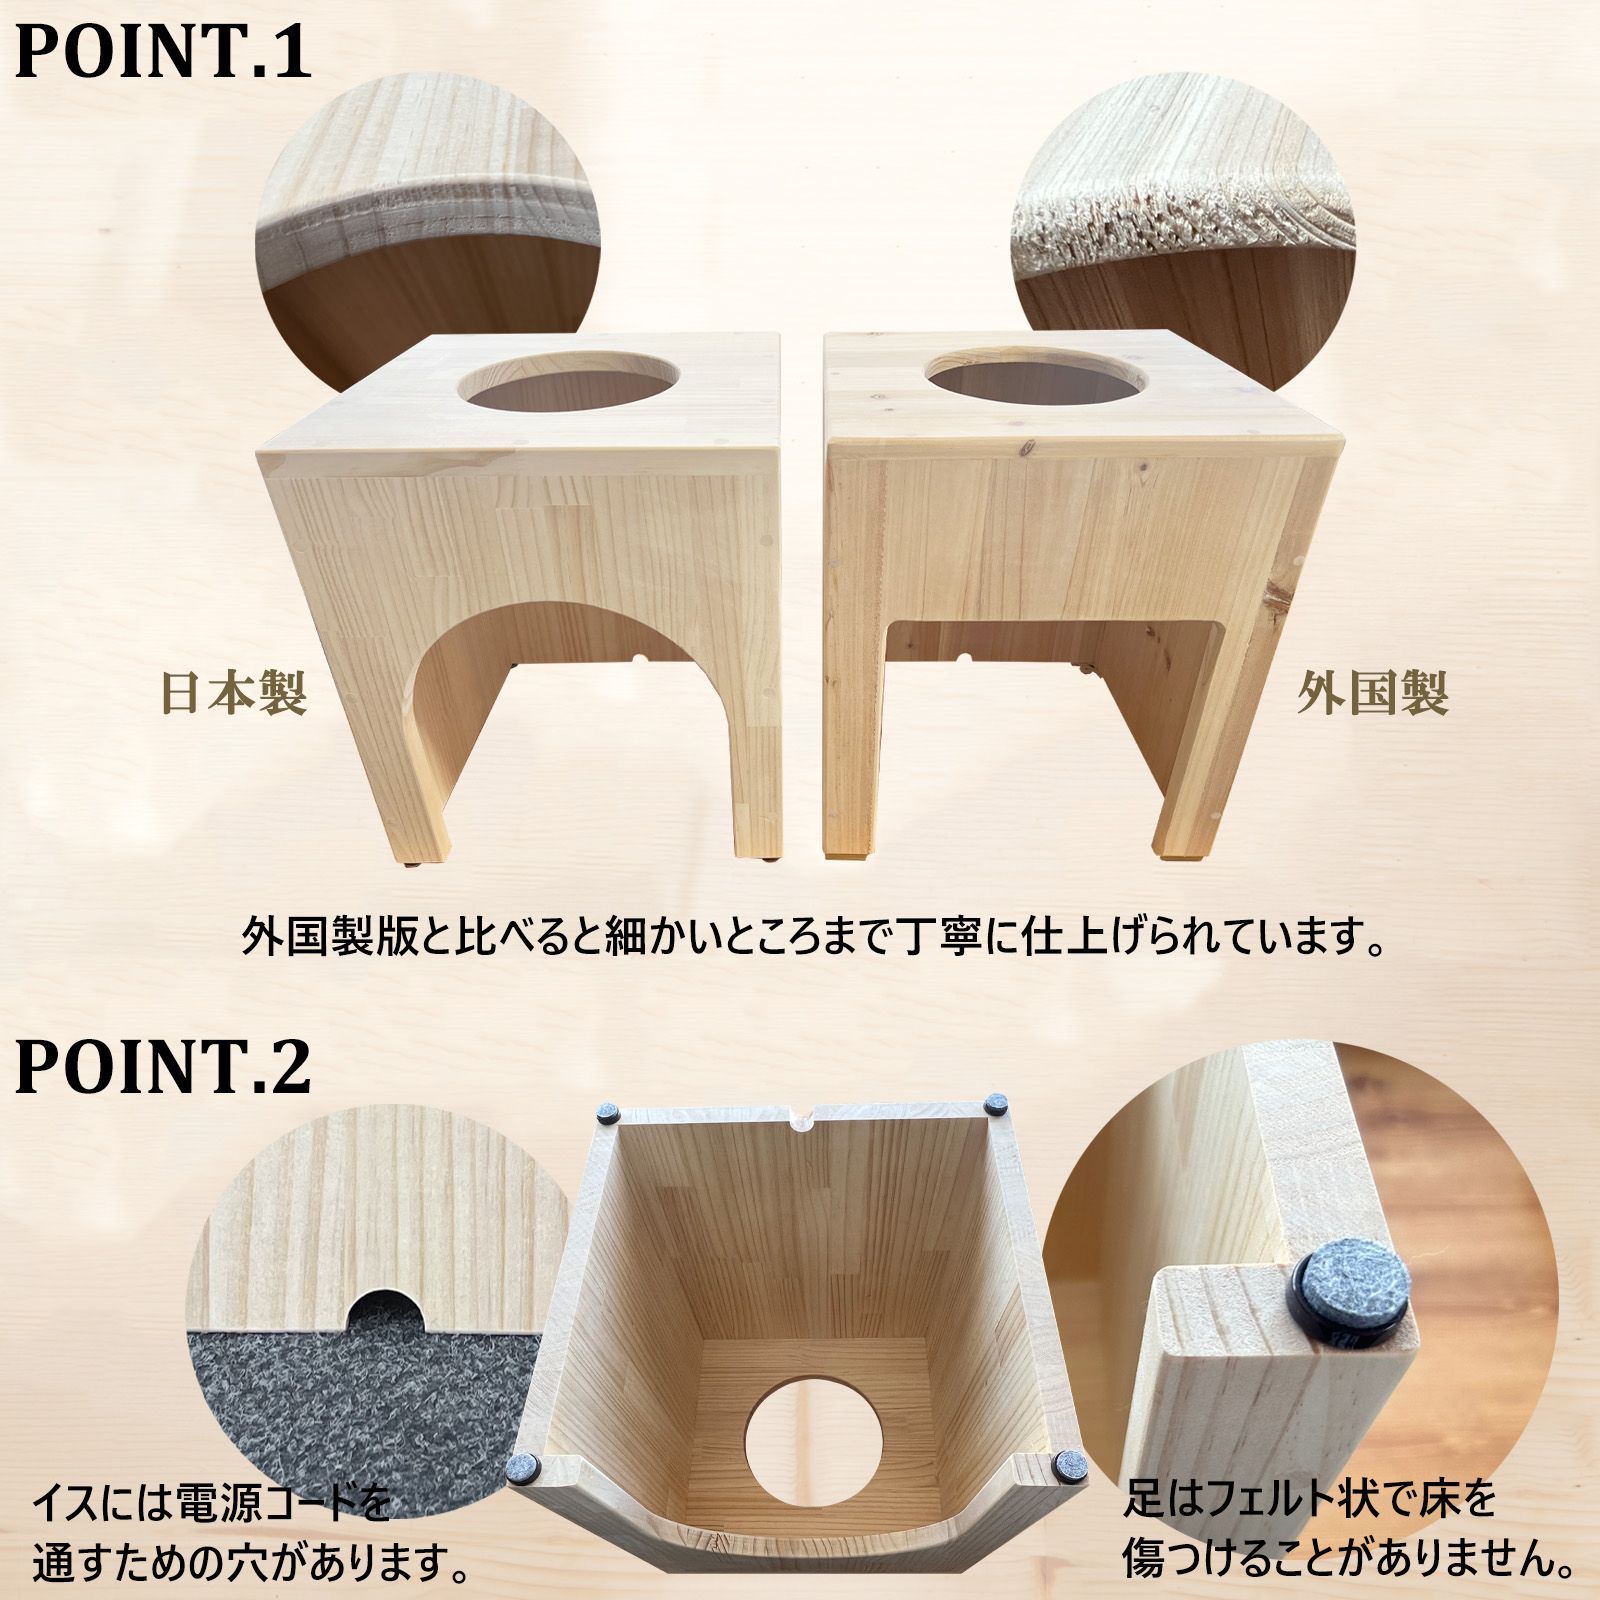 温楽 よもぎ蒸しセット 5品 日本の家具職人の手作り 椅子 韓国産 天然